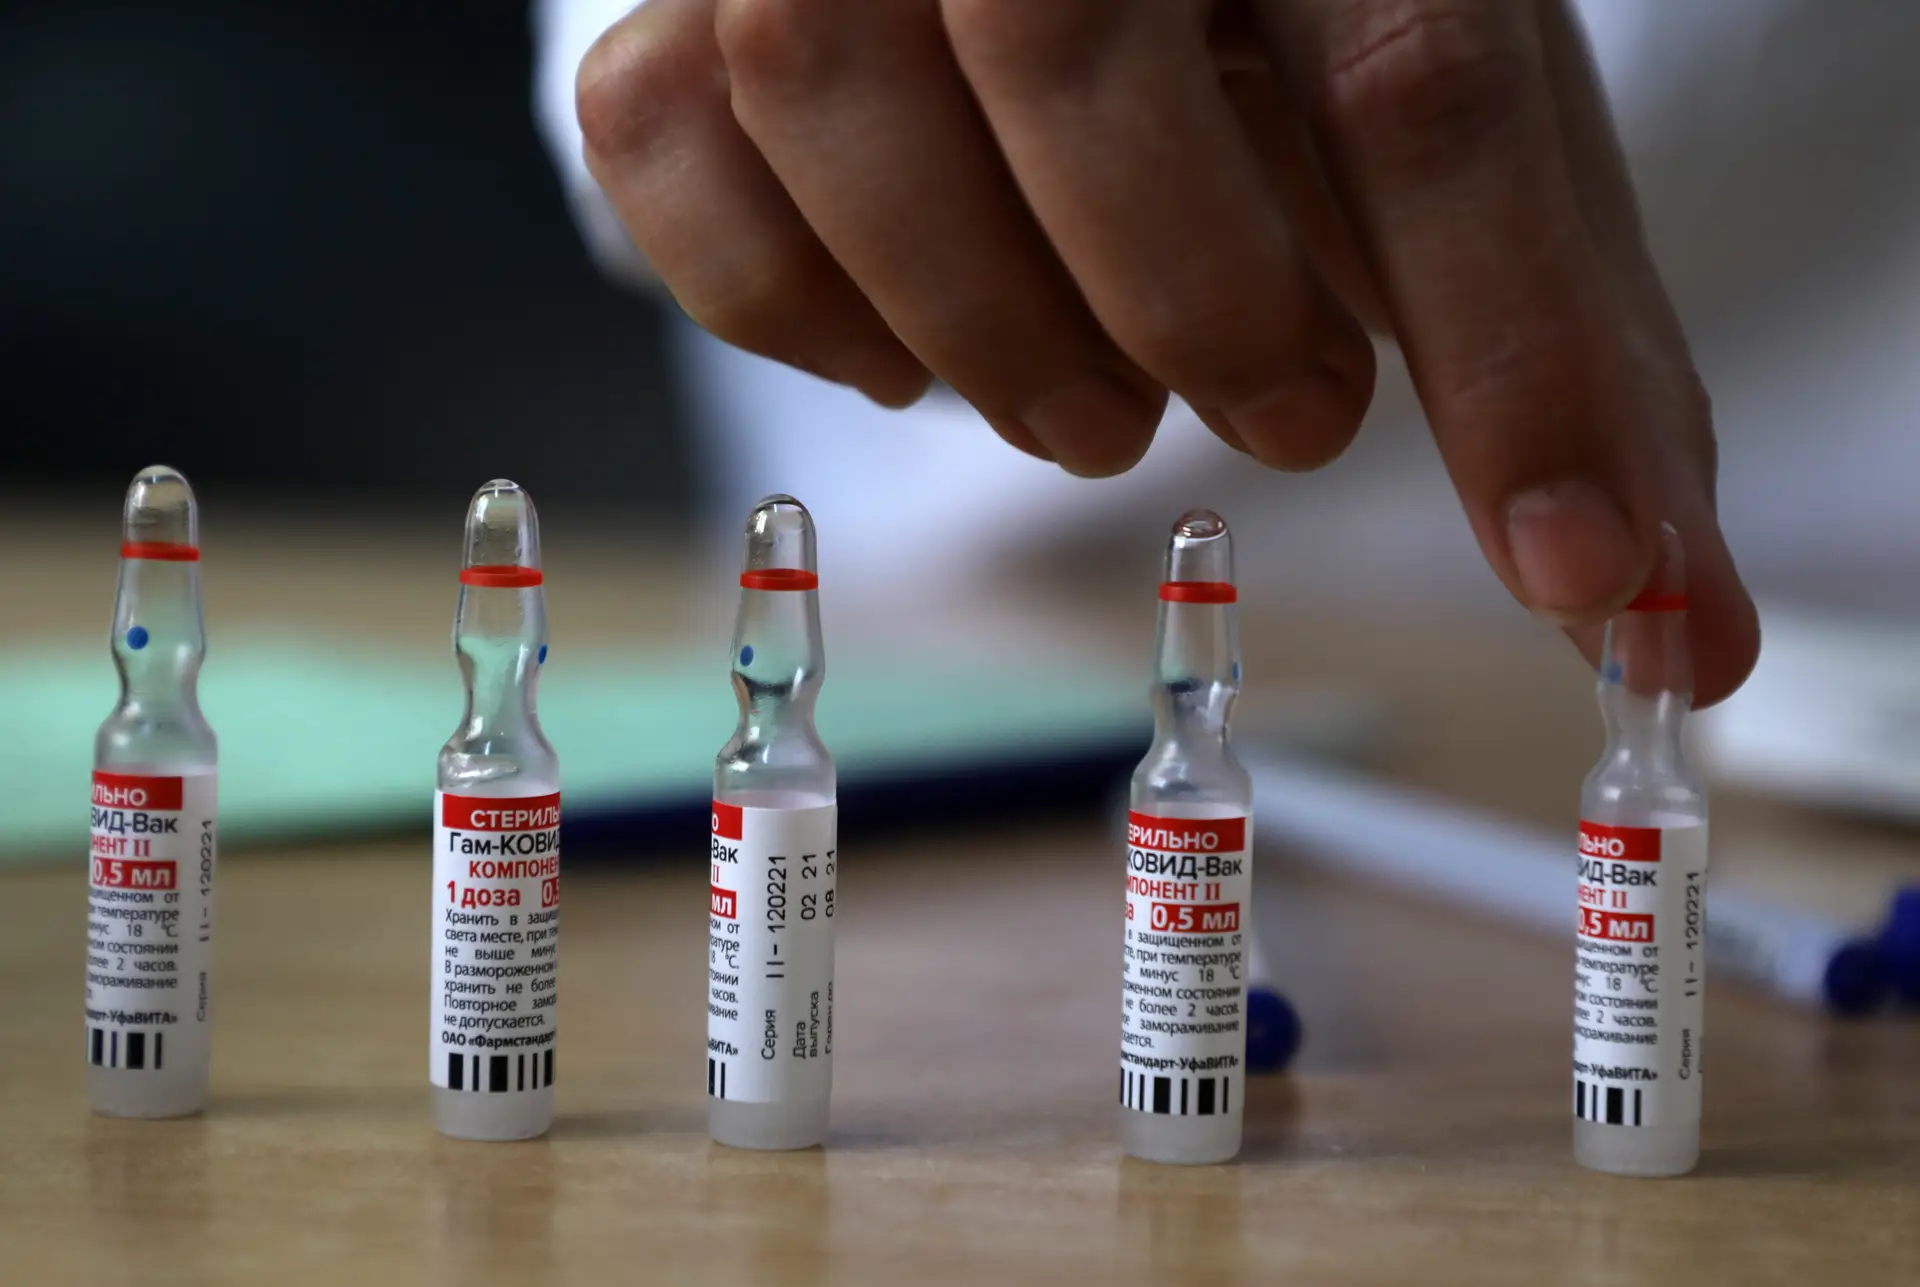 “Não devemos discriminar nenhuma vacina em função da sua origem”, defende diretora da Agência Europeia de Medicamentos